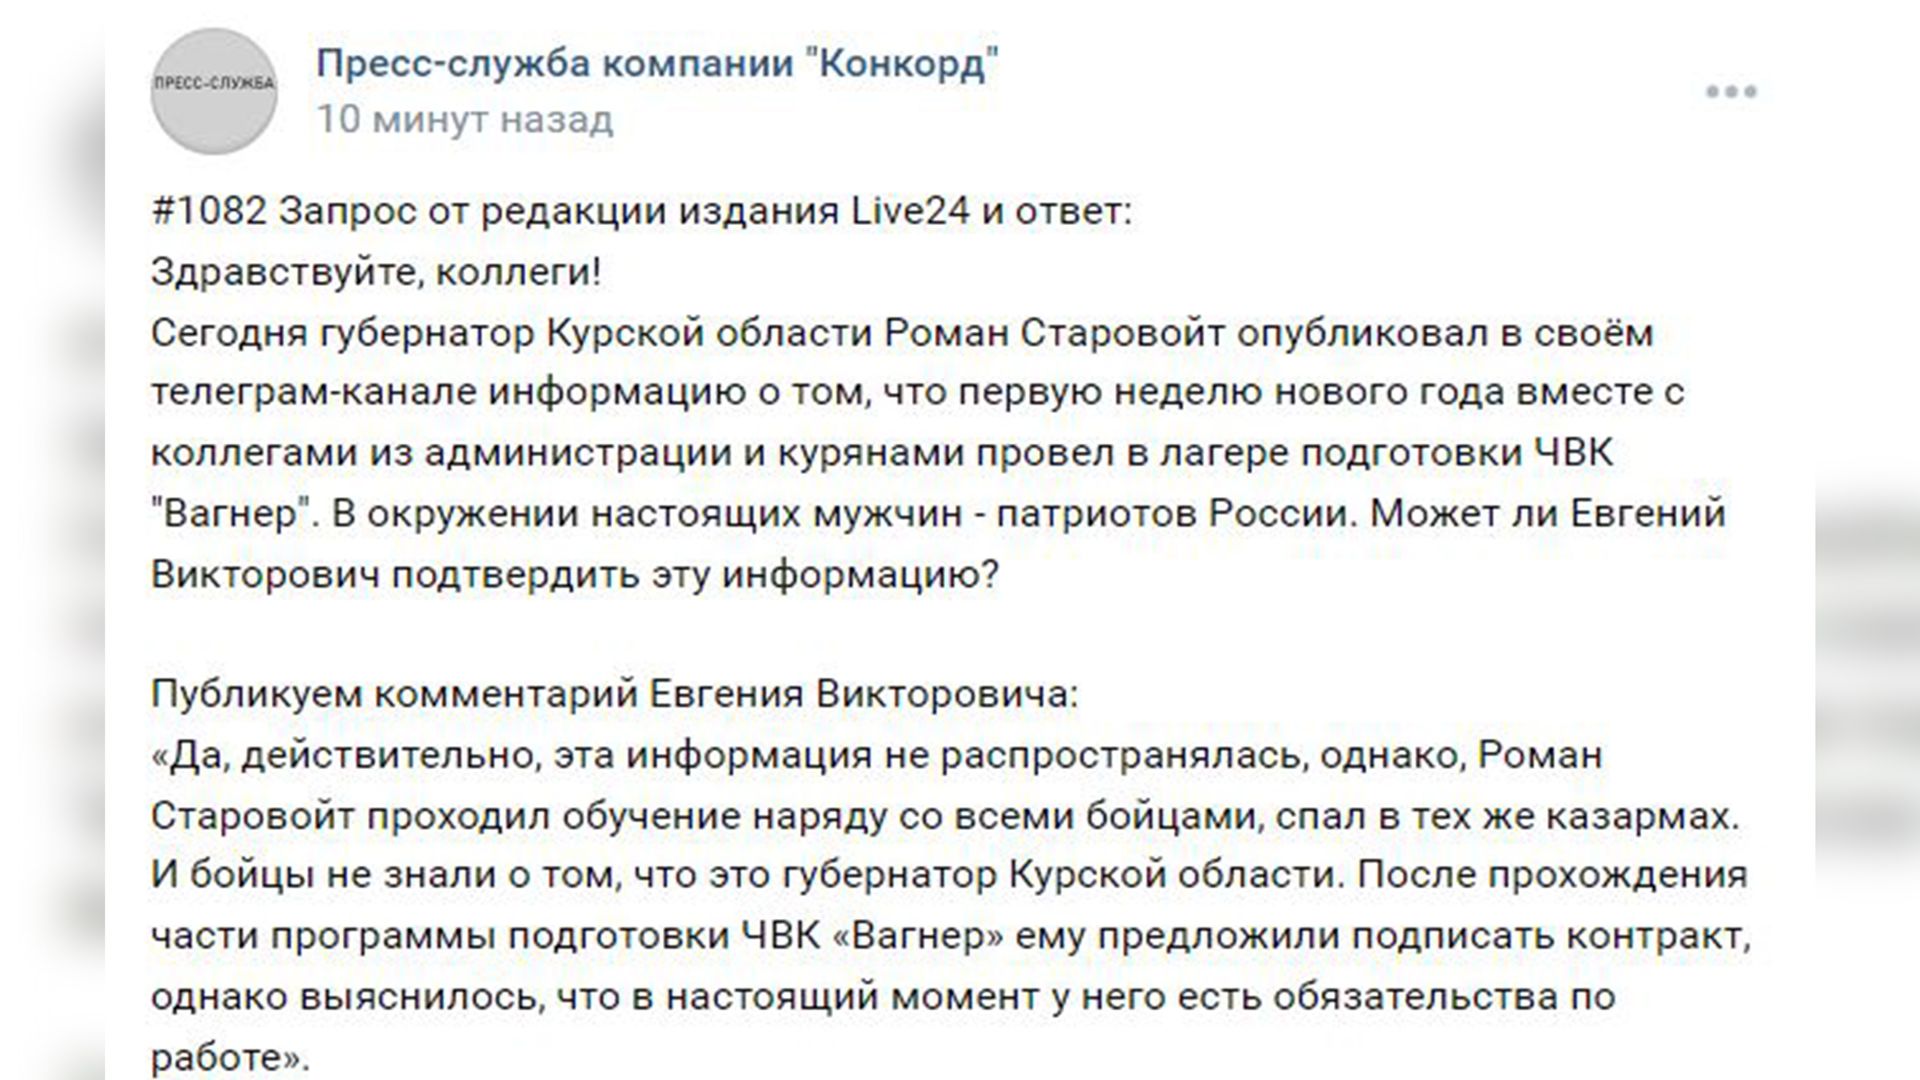 «Наряду со всеми бойцами»: Пригожин подтвердил участие курского губернатора в тренировках ЧВК «Вагнер»